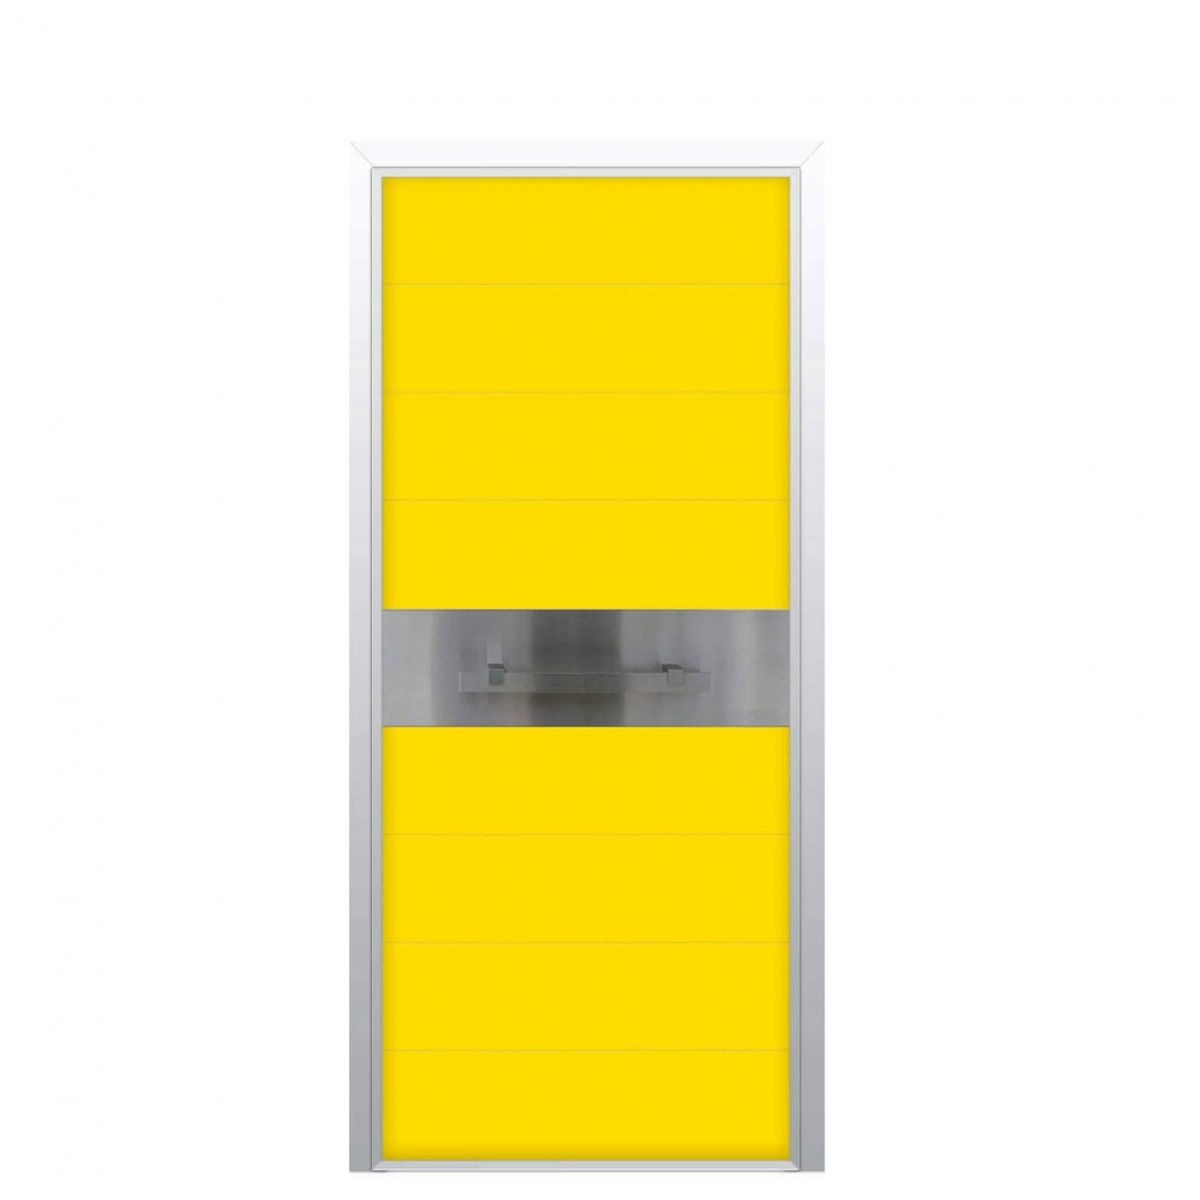 Θωρακισμένη Πόρτα με αυτόνομο σύστημα συναγερμού ΑRGOS ALARM 16